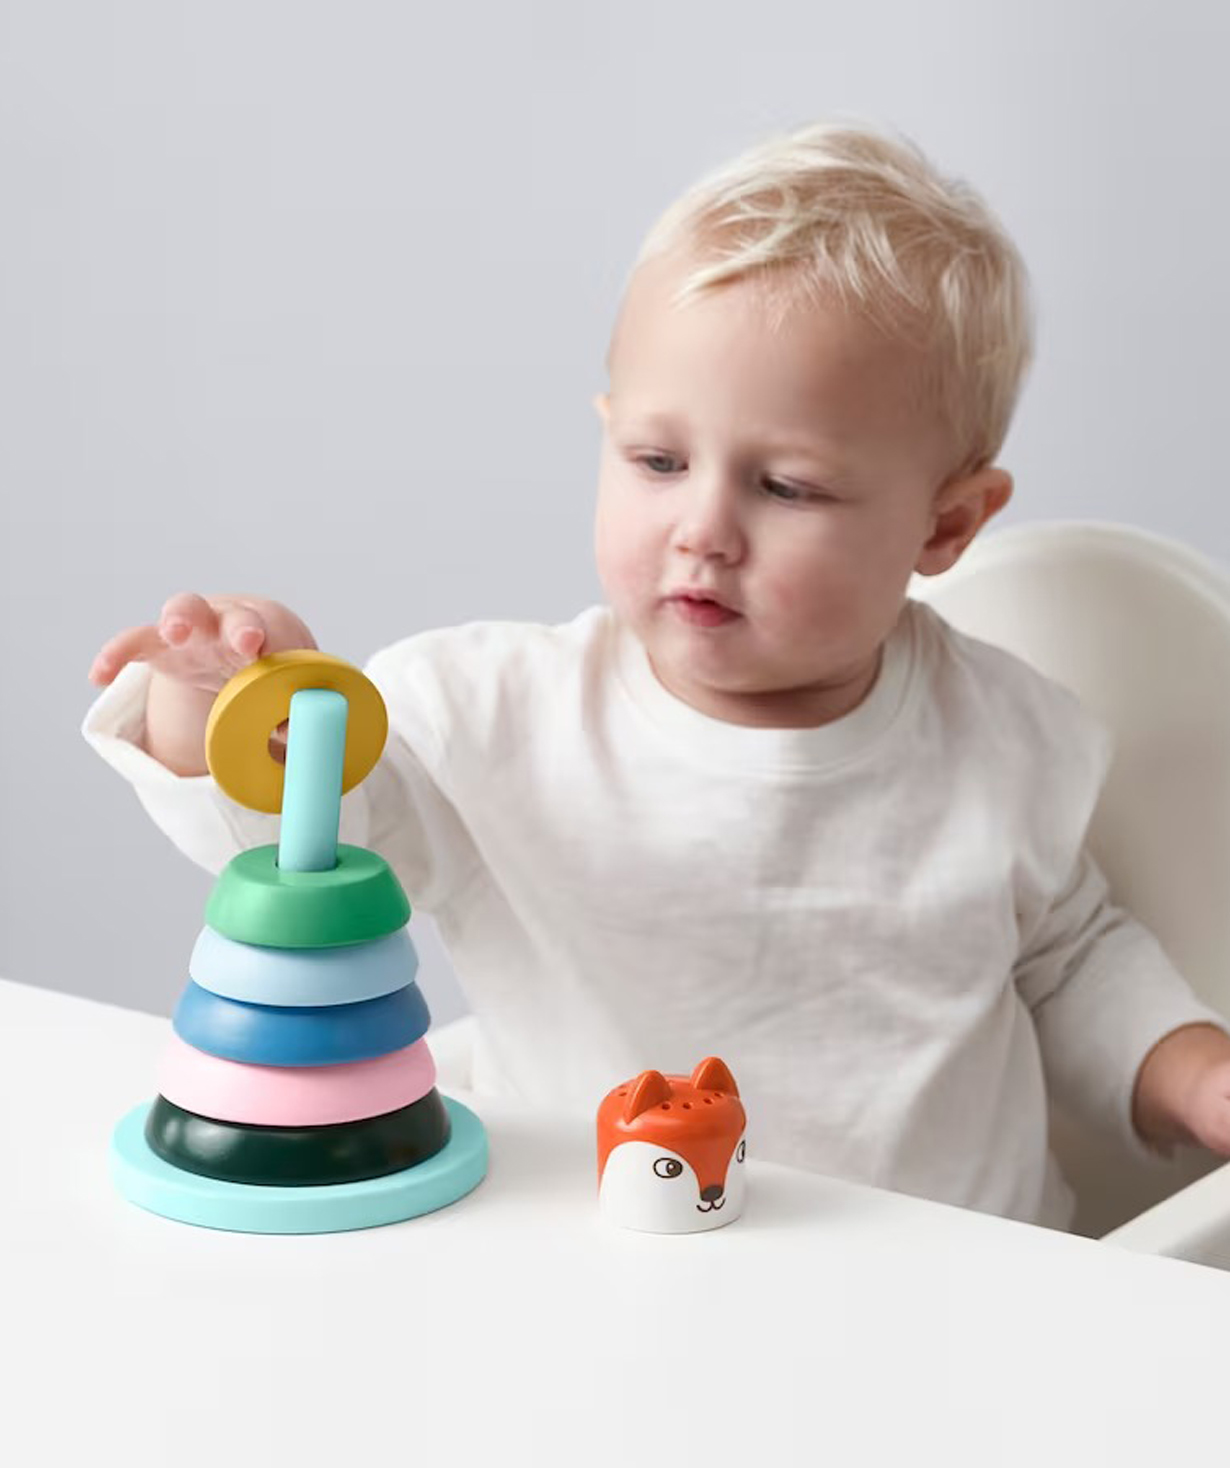 Խաղալիք ''UPPSTÅ'' օղակներով բուրգ